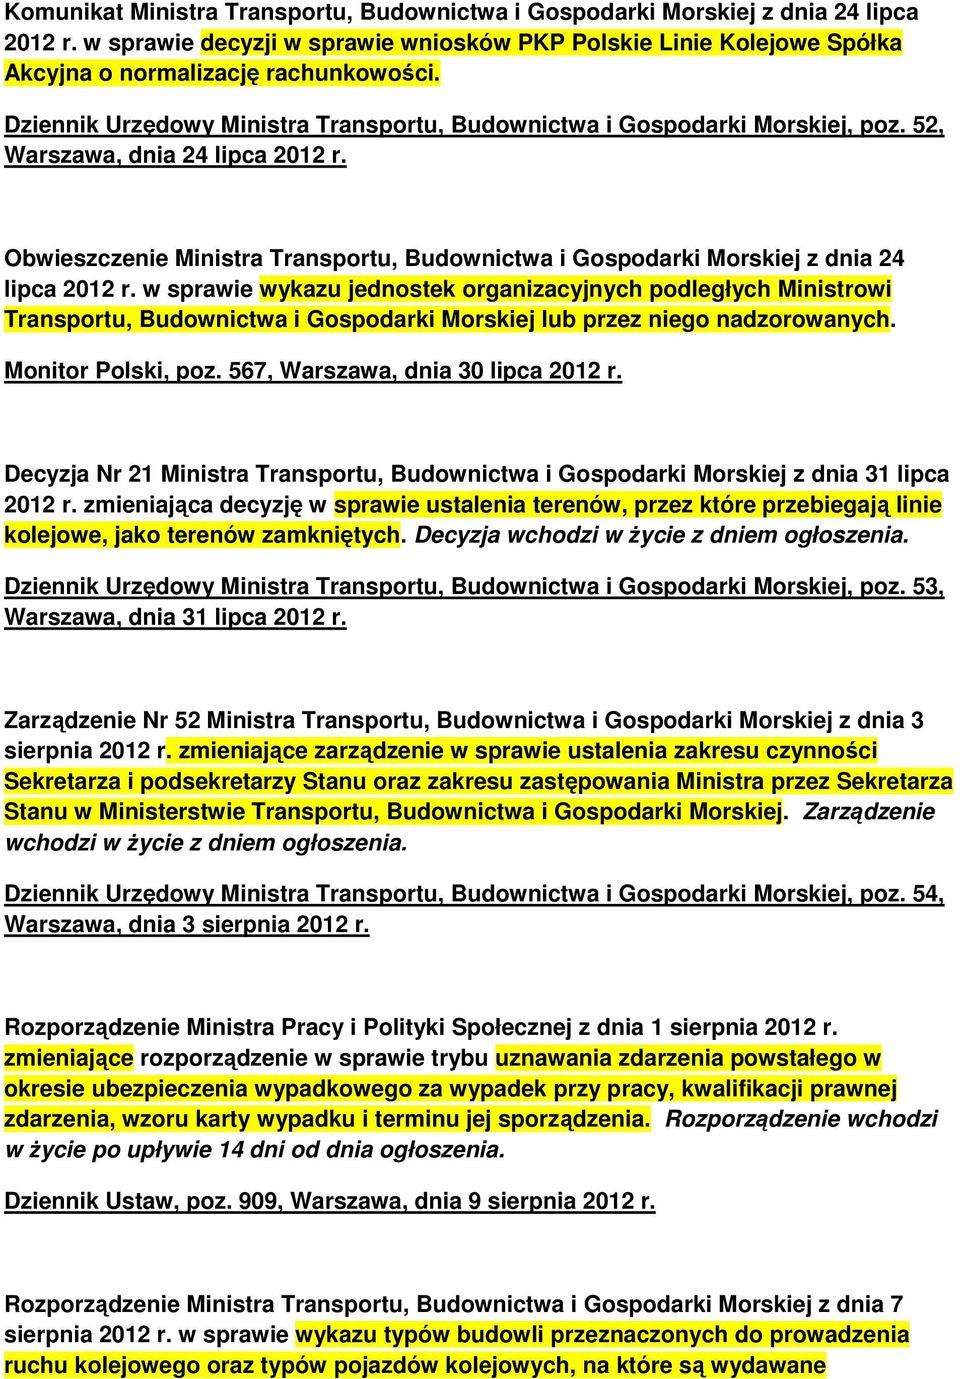 Obwieszczenie Ministra Transportu, Budownictwa i Gospodarki Morskiej z dnia 24 lipca 2012 r.